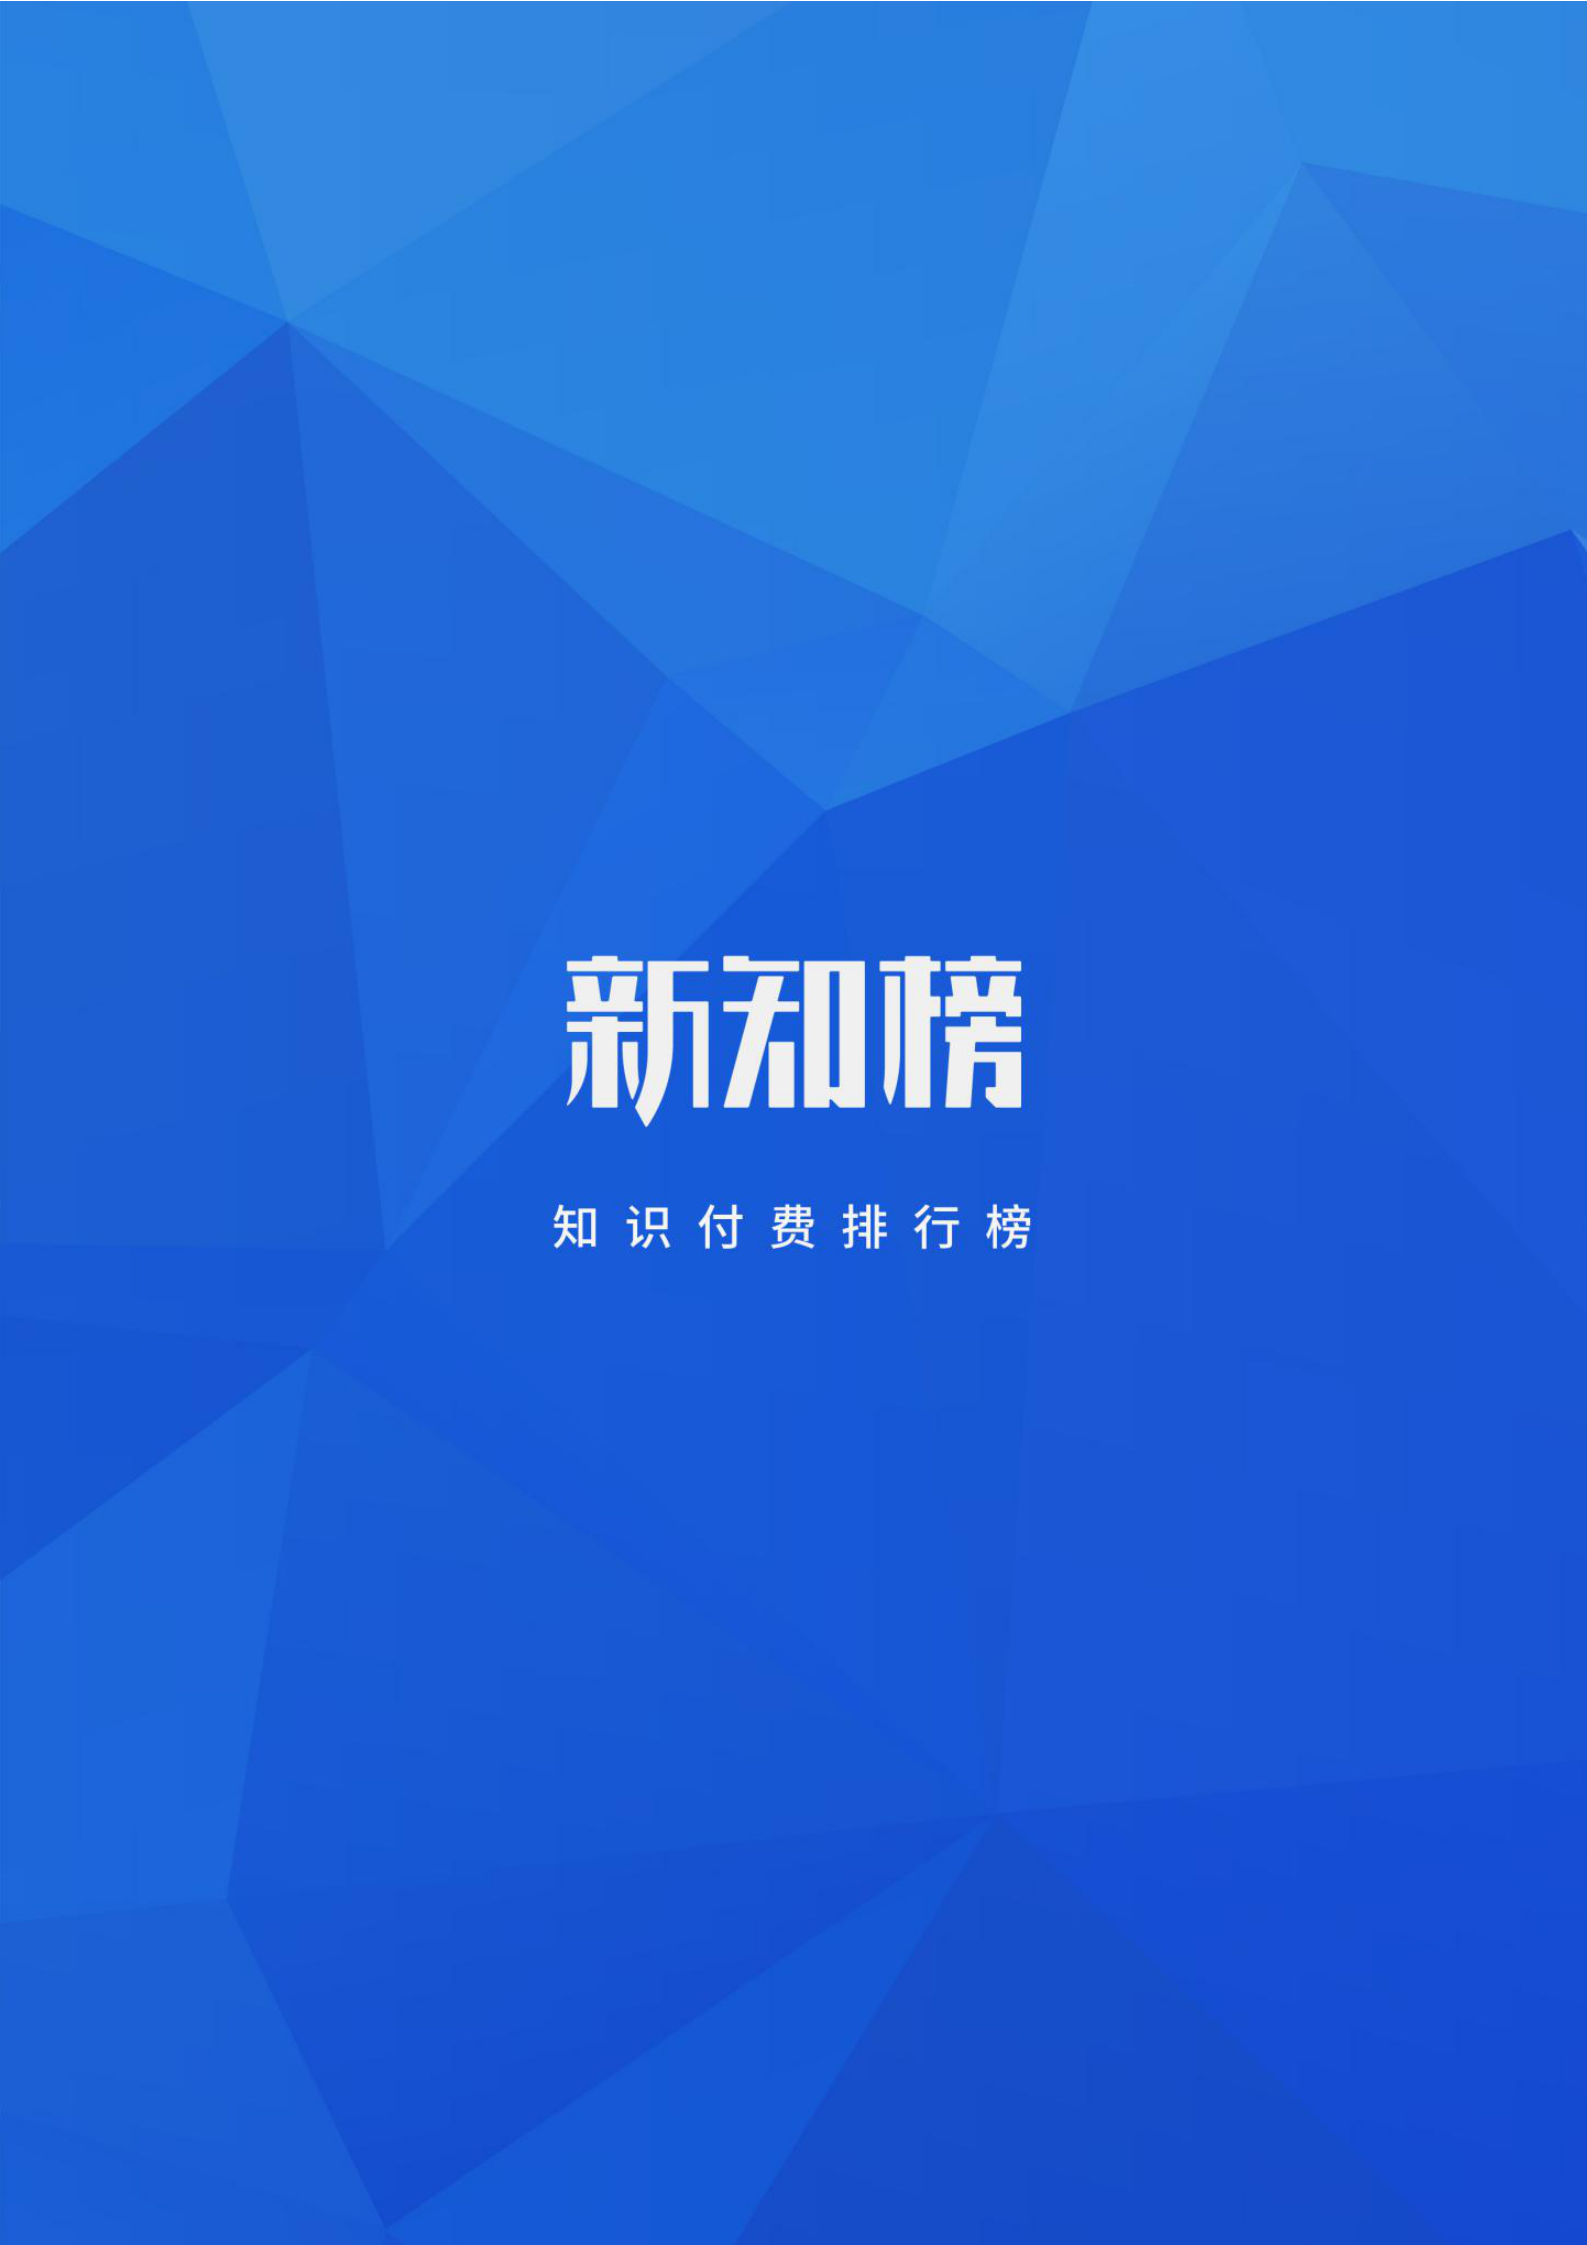 新知榜2018-2019内容付费行业白皮书_40.png